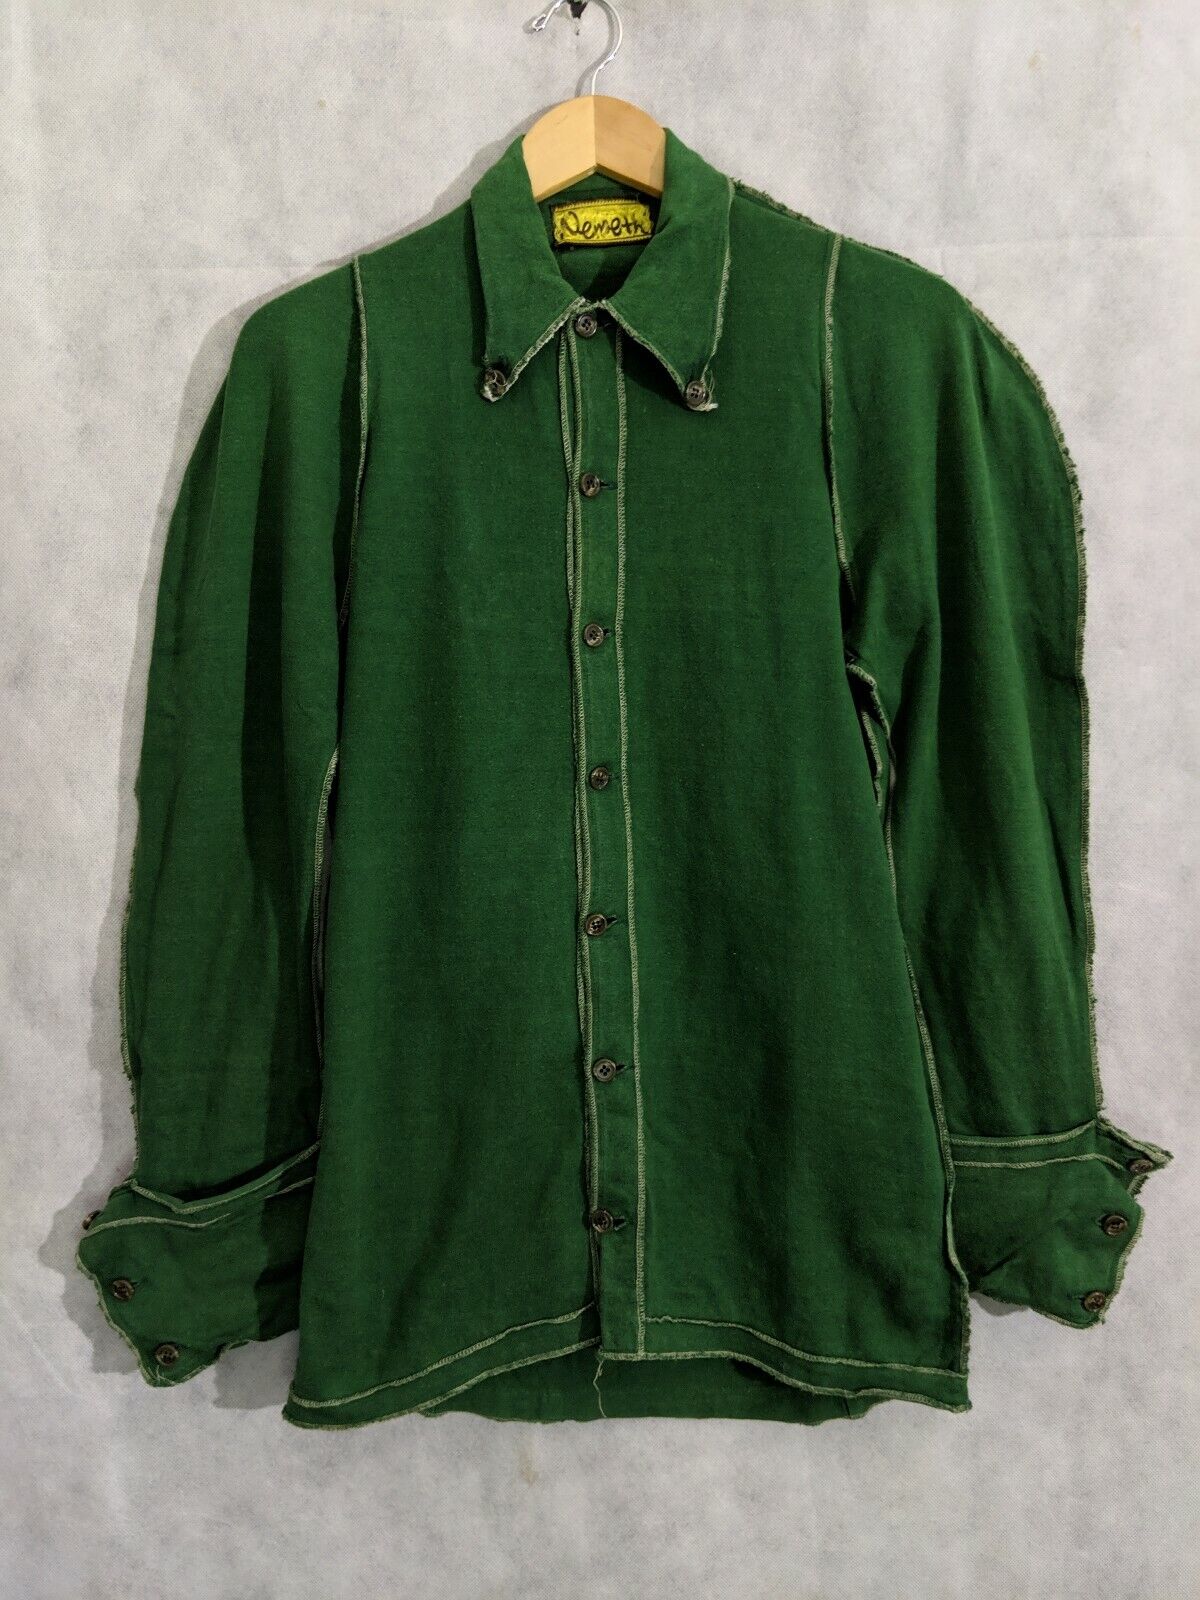 Christopher NEMETH Vintage Archive Iconic Jersey Cotton Green Renaissance  Shirt